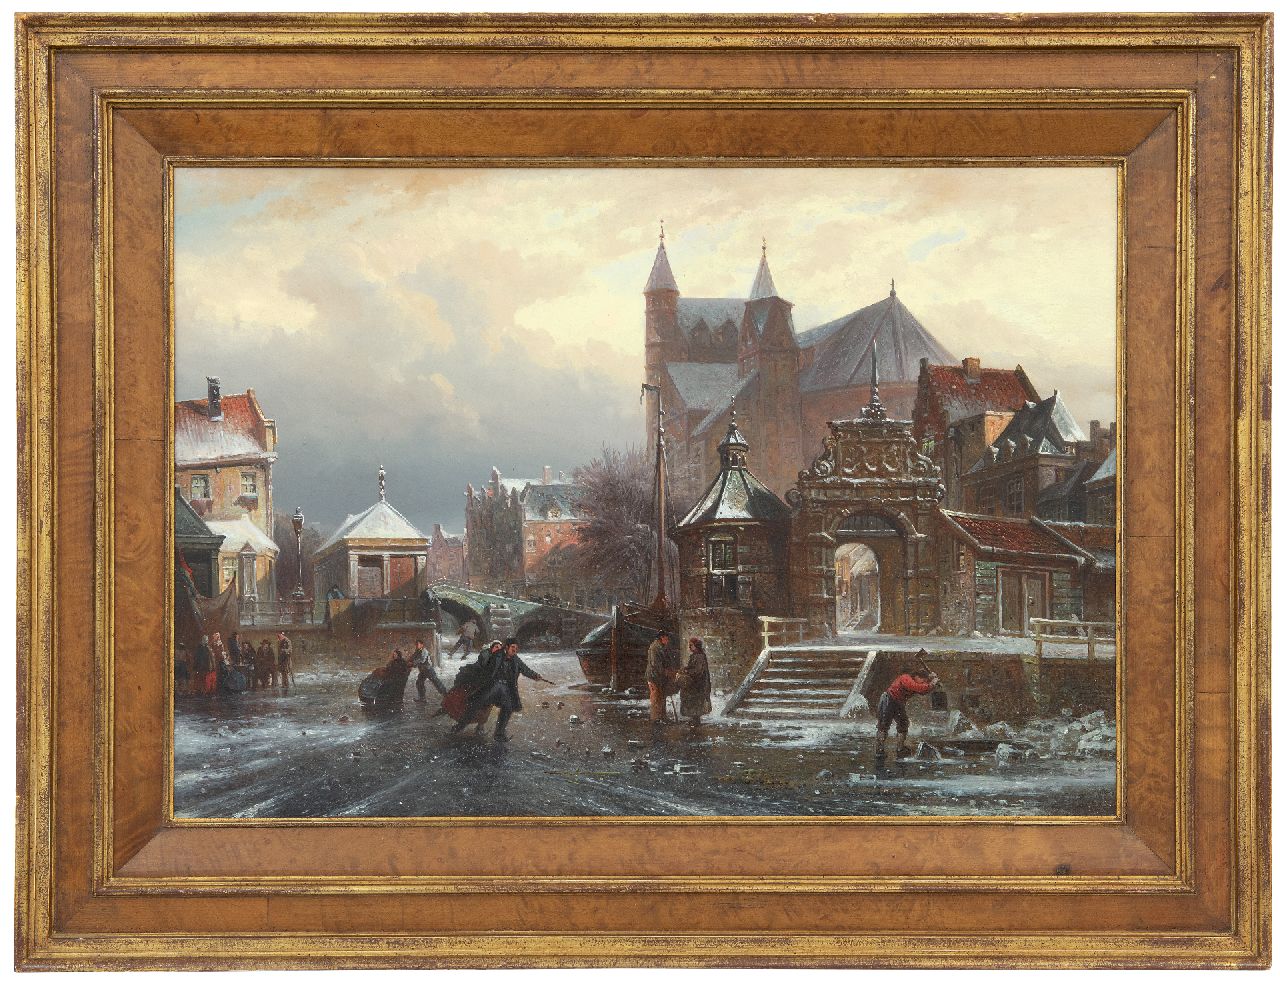 Bommel E.P. van | Elias Pieter van Bommel | Schilderijen te koop aangeboden | Schaatspret op een stadsgracht, olieverf op paneel 36,7 x 54,4 cm, gesigneerd rechtsonder en gedateerd '72, zonder lijst